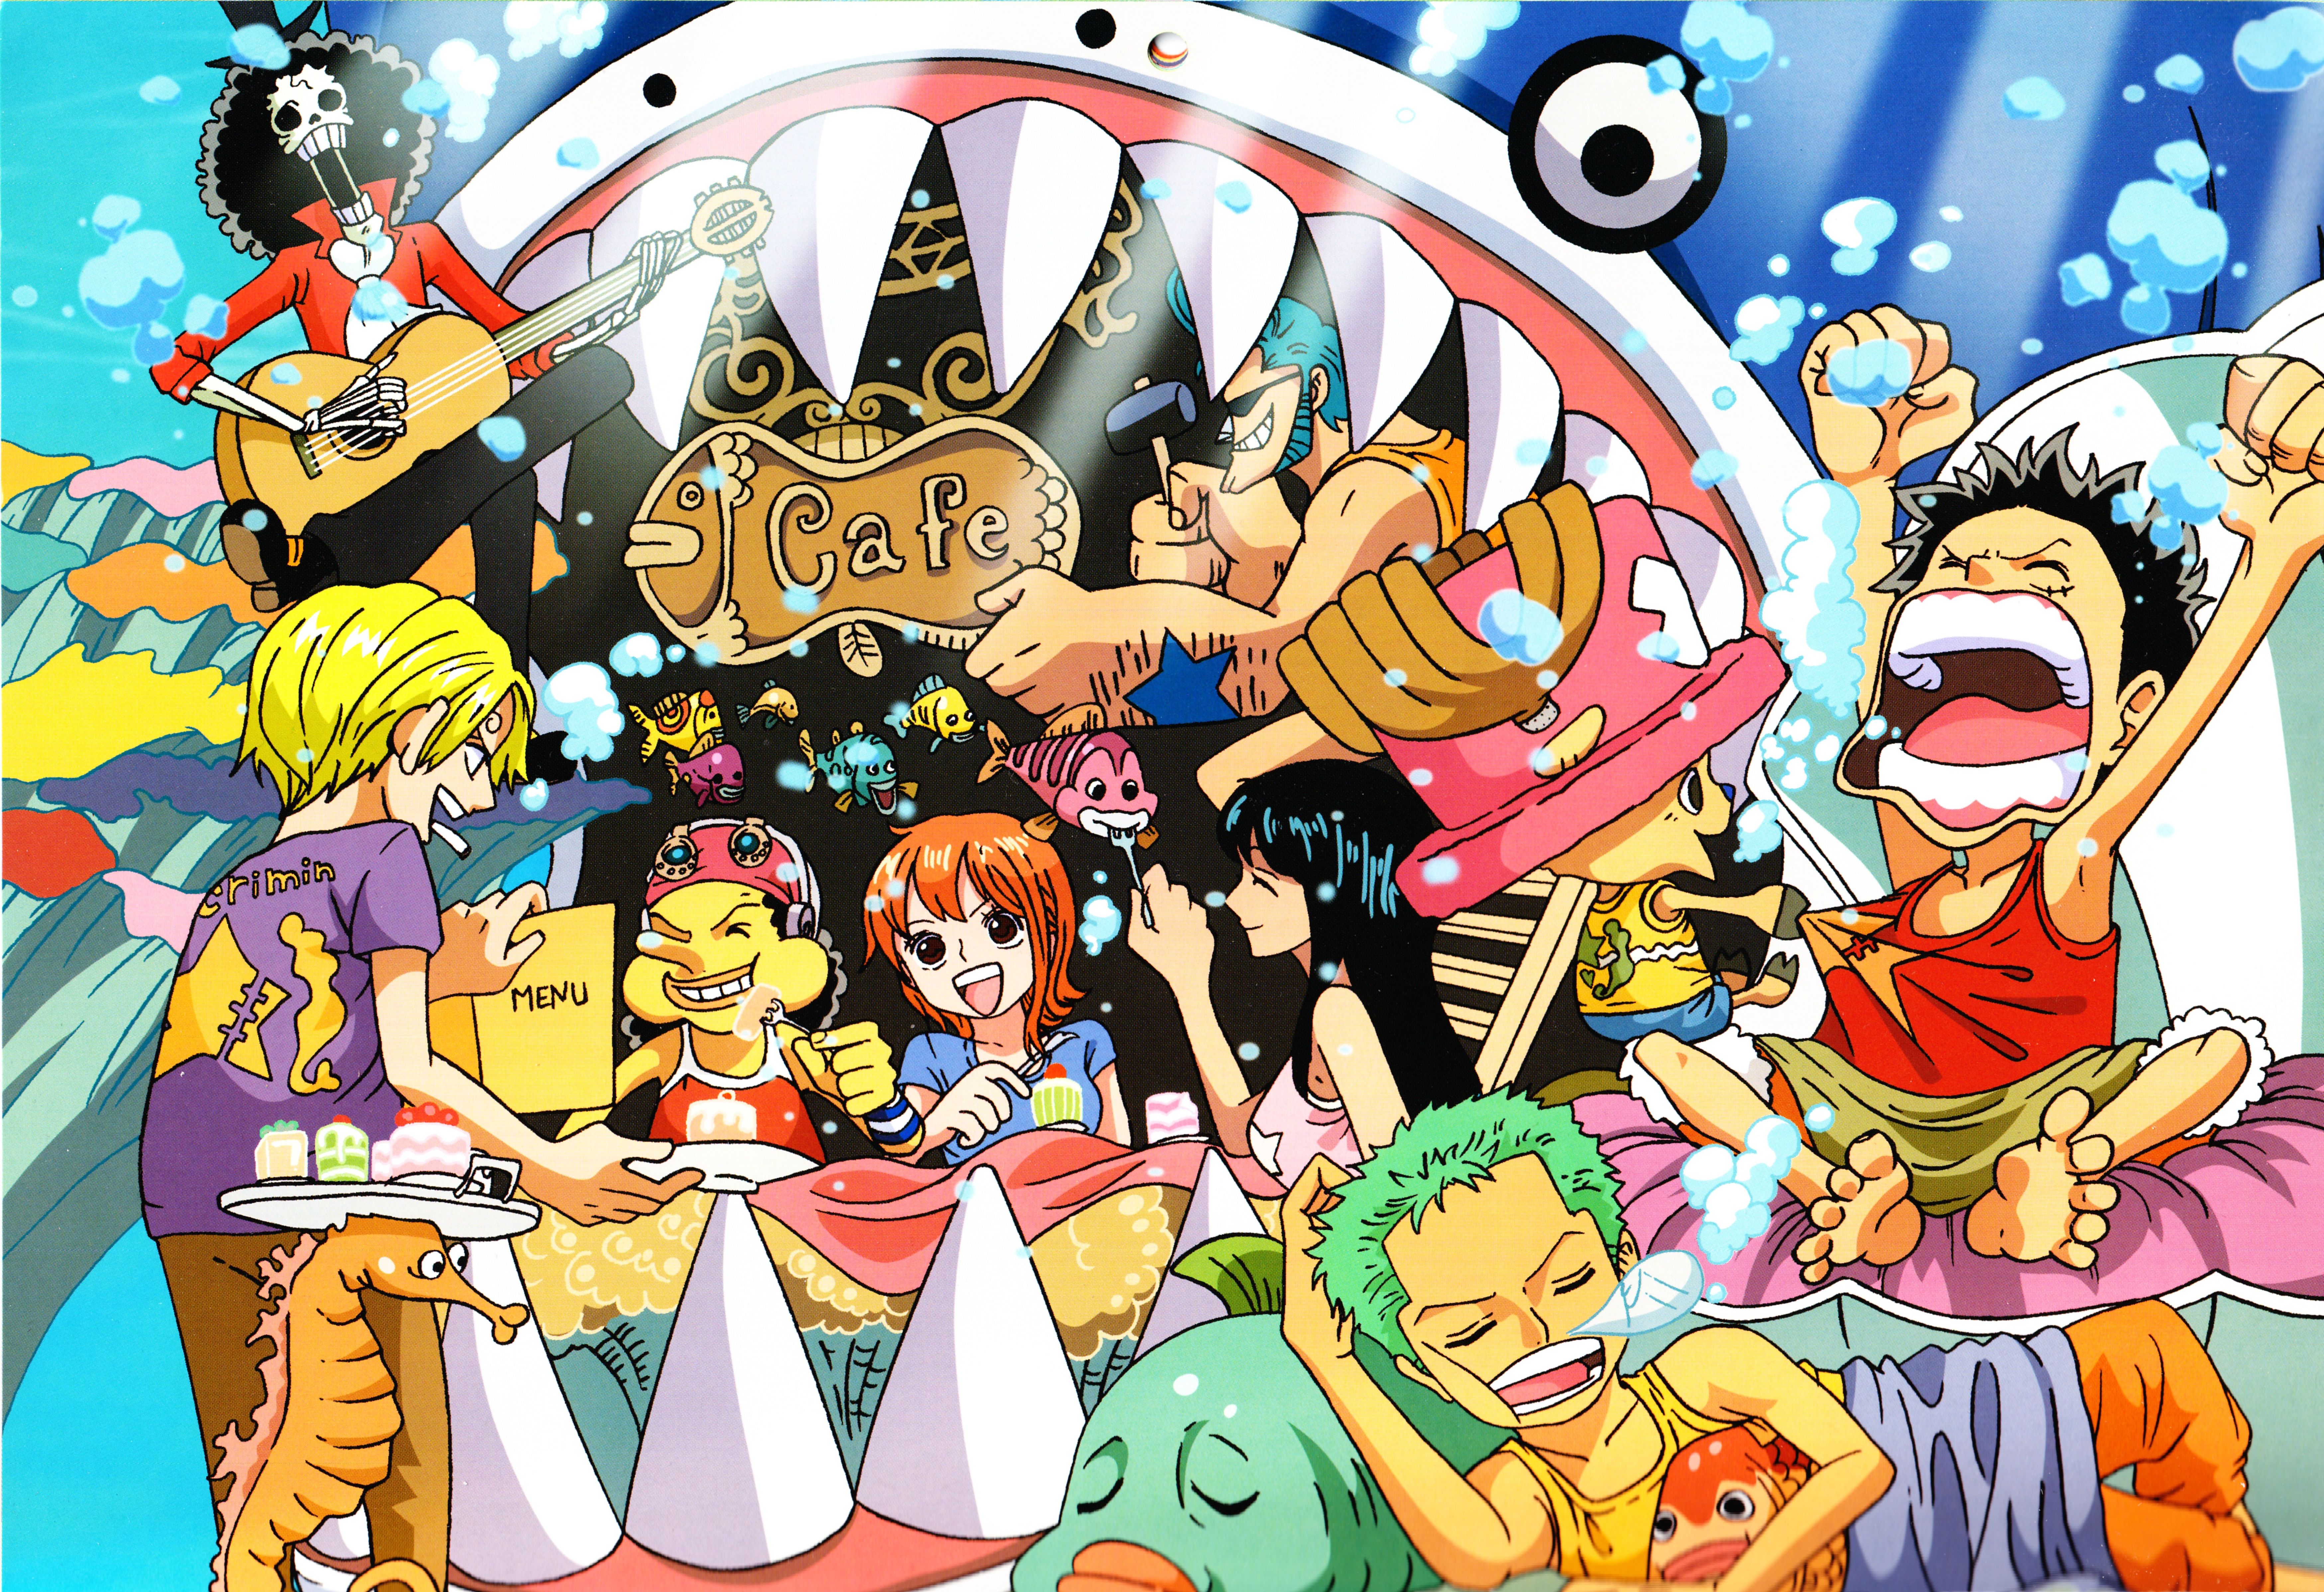 Baixe gratuitamente a imagem Anime, One Piece, Tony Tony Chopper, Usopp (One Piece), Roronoa Zoro, Monkey D Luffy, Nami (One Piece), Sanji (One Piece), Brook (One Piece), Nico Robin, Franky (One Piece) na área de trabalho do seu PC